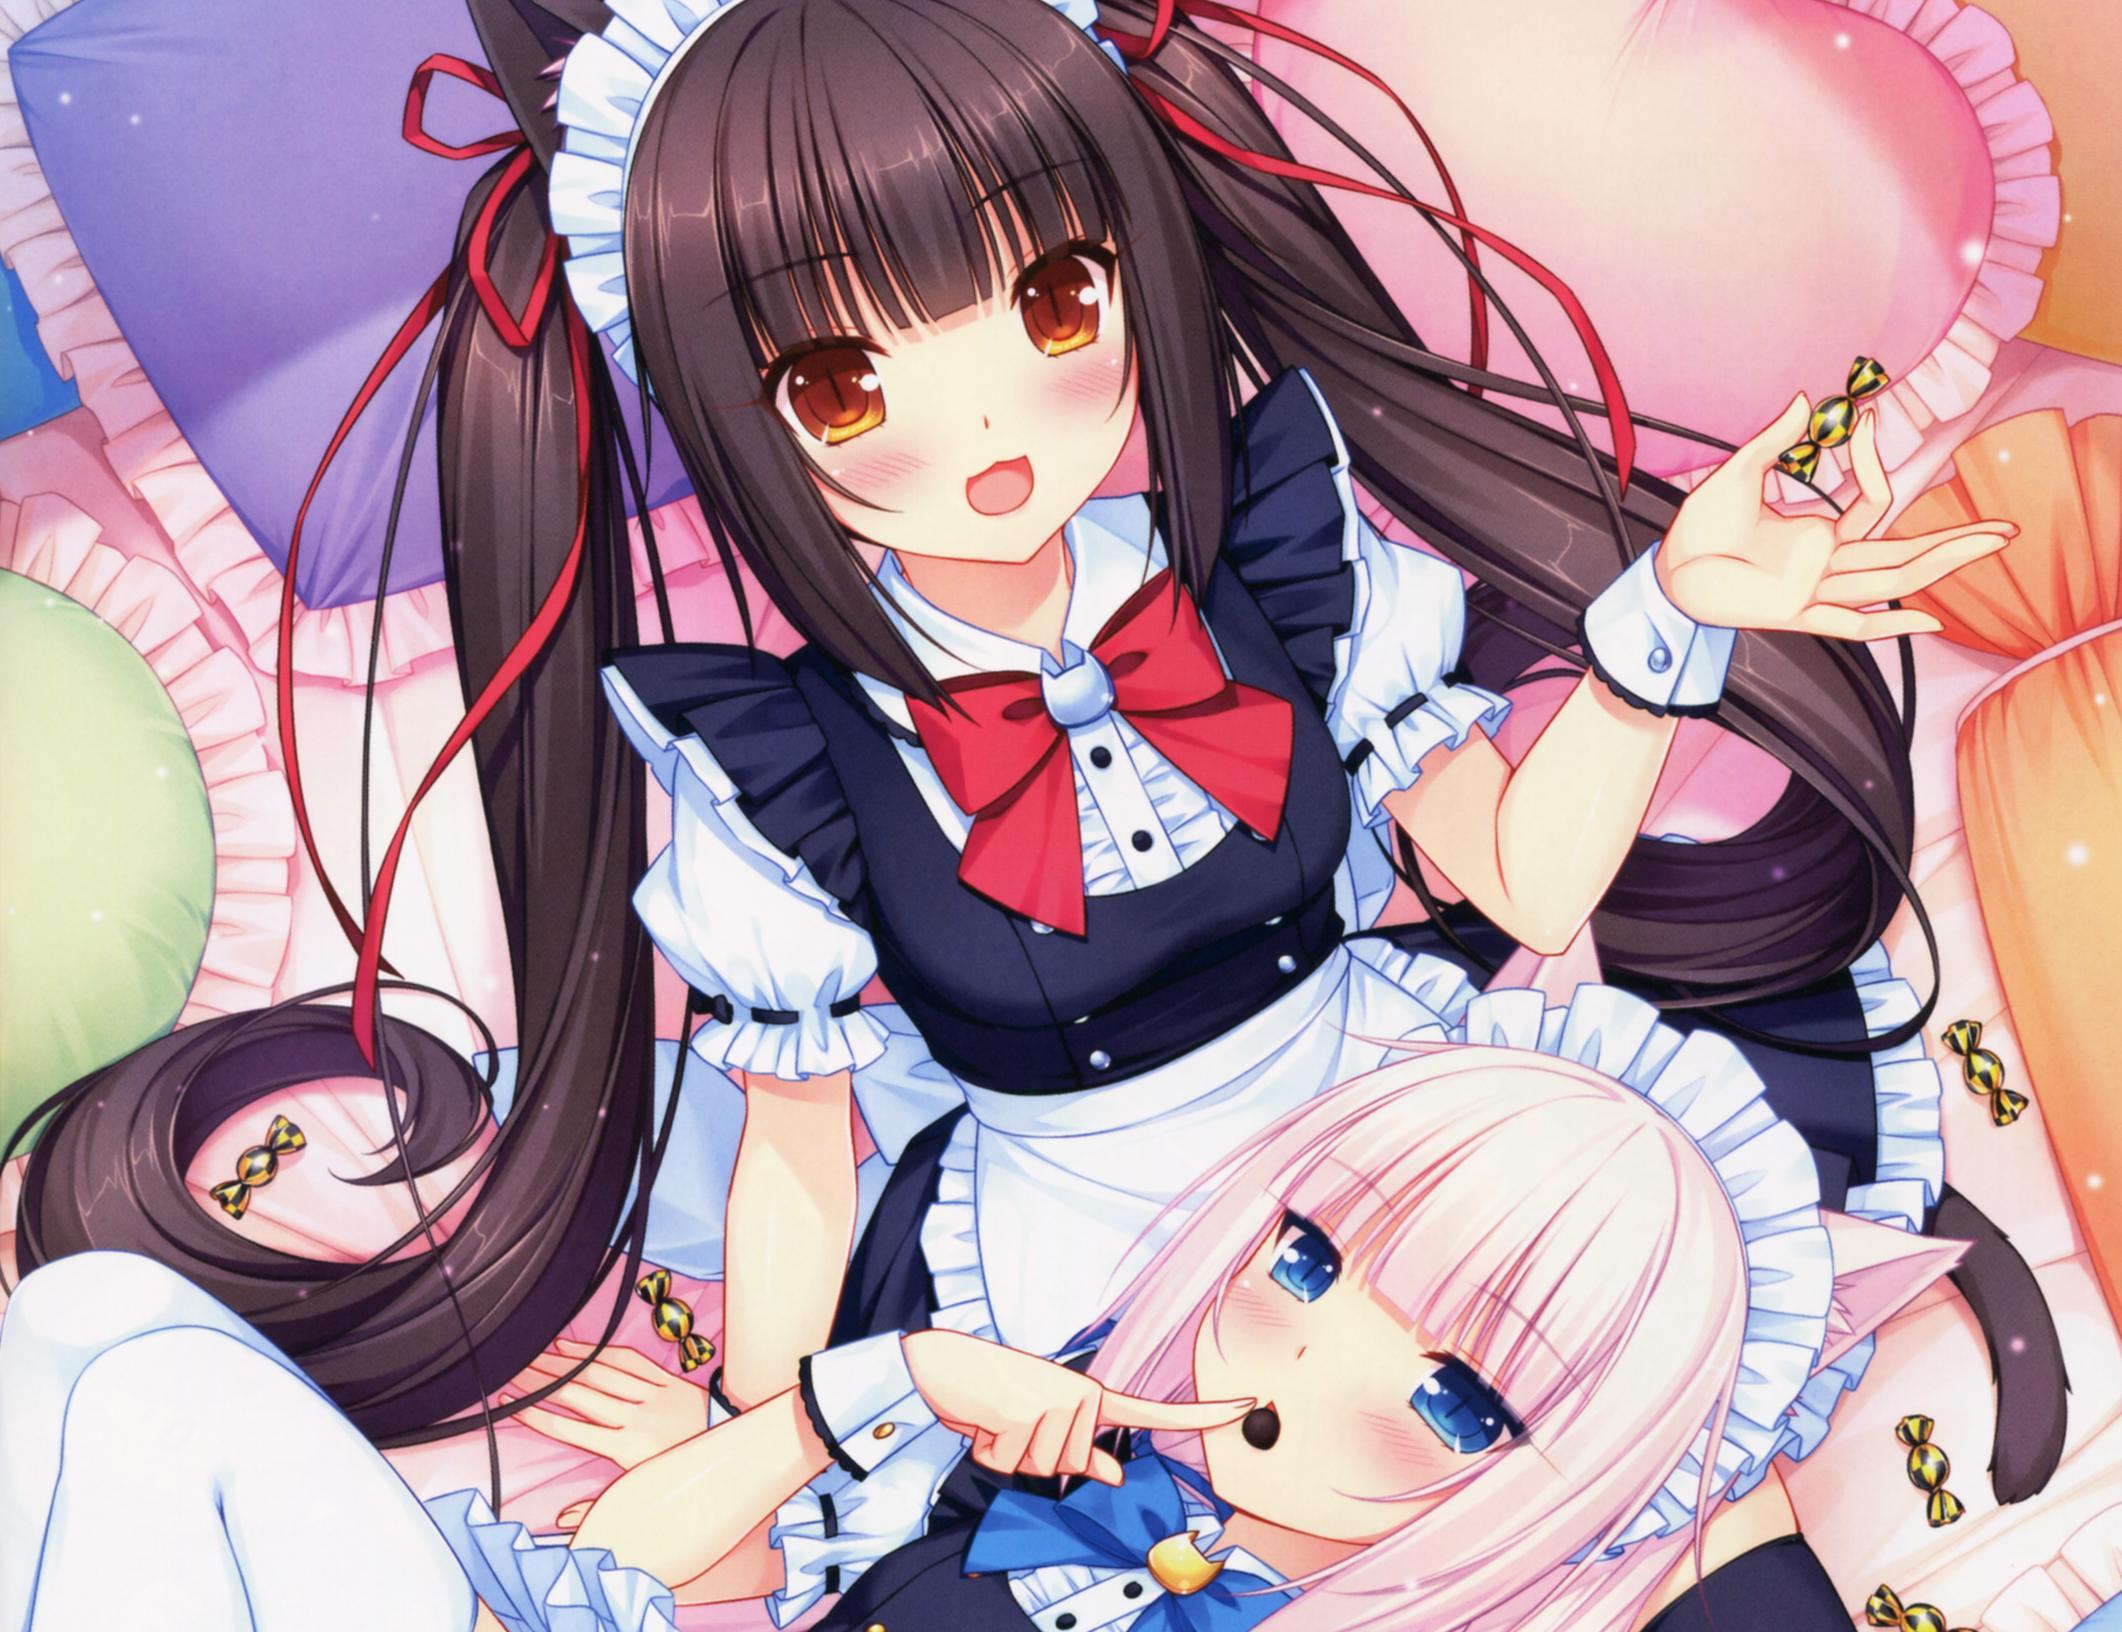 Anime Neko Maid Wallpapers Top Free Anime Neko Maid Backgrounds